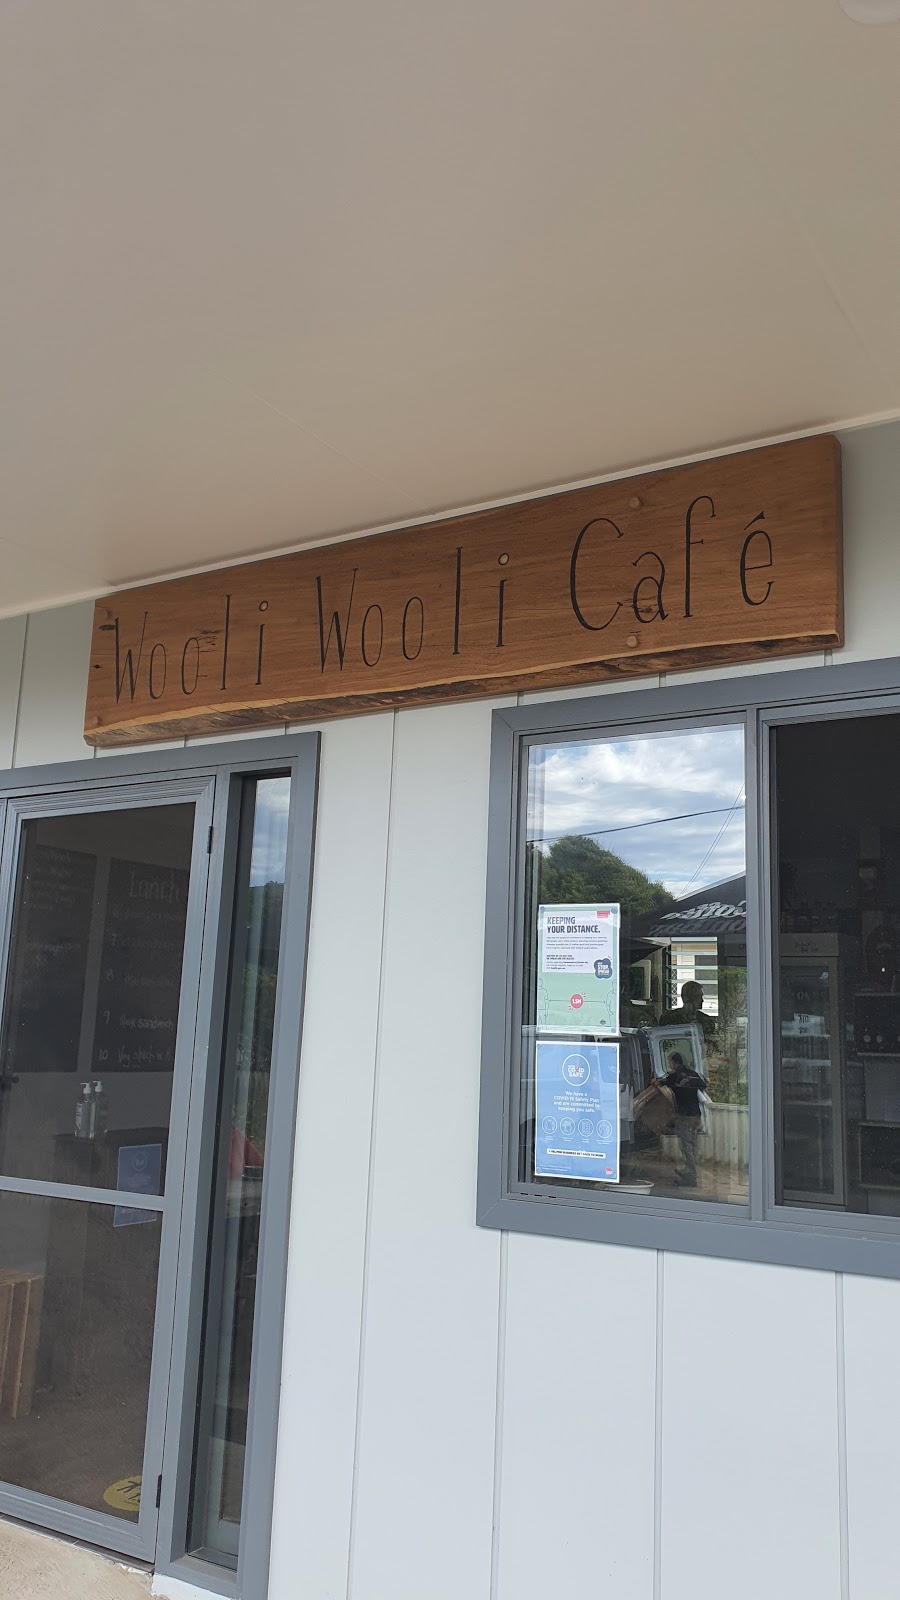 Woli Woli Cafe | cafe | 33-35 Main St, Wooli NSW 2462, Australia